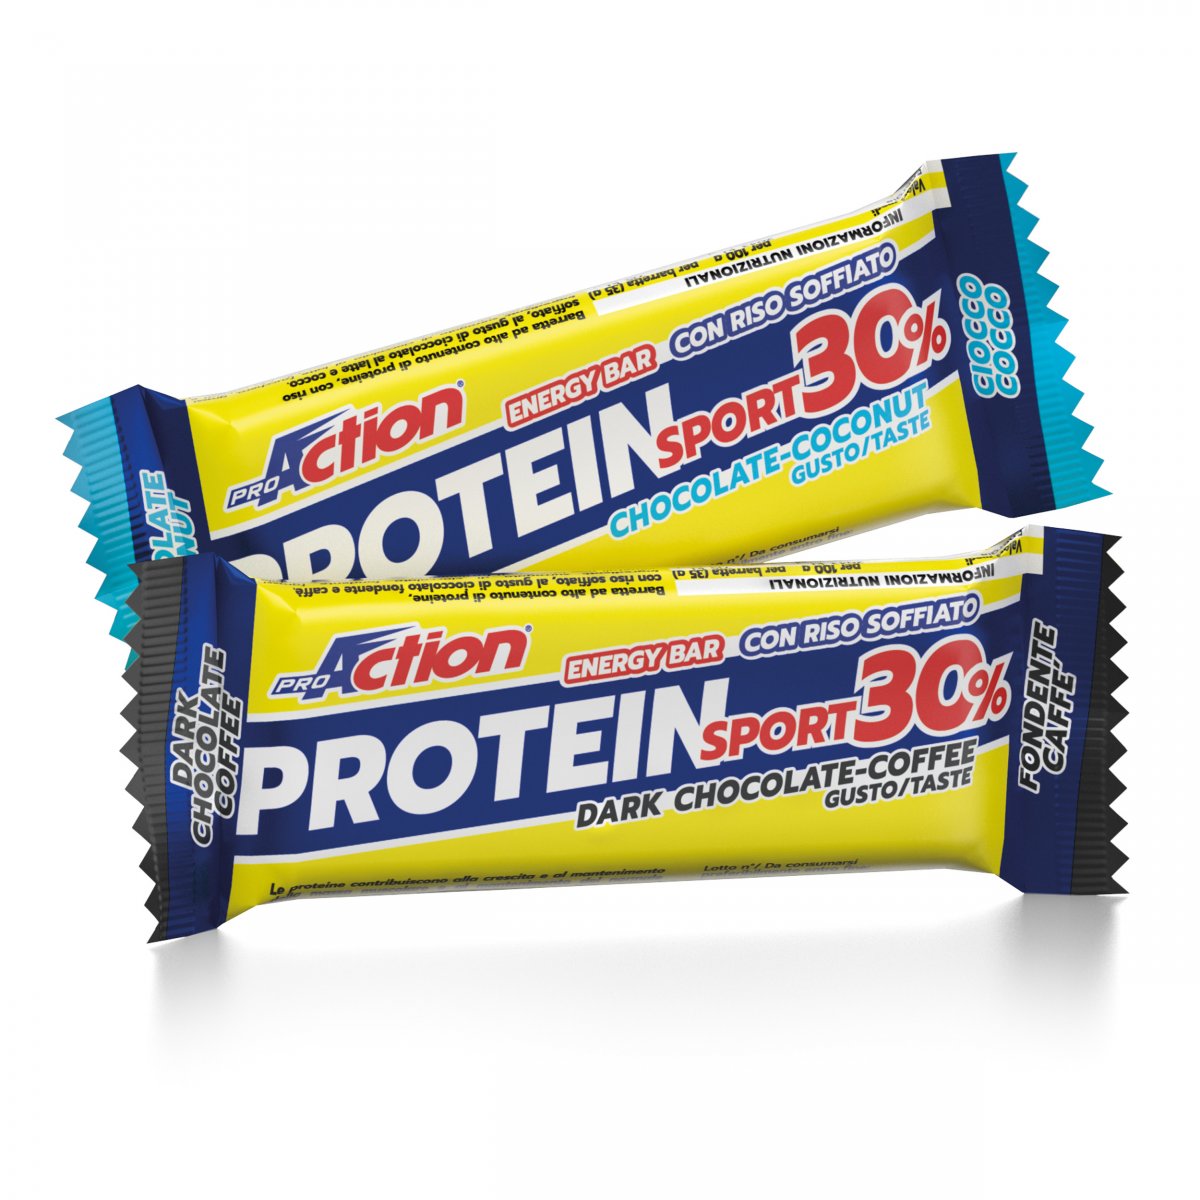 Protein sport 30%